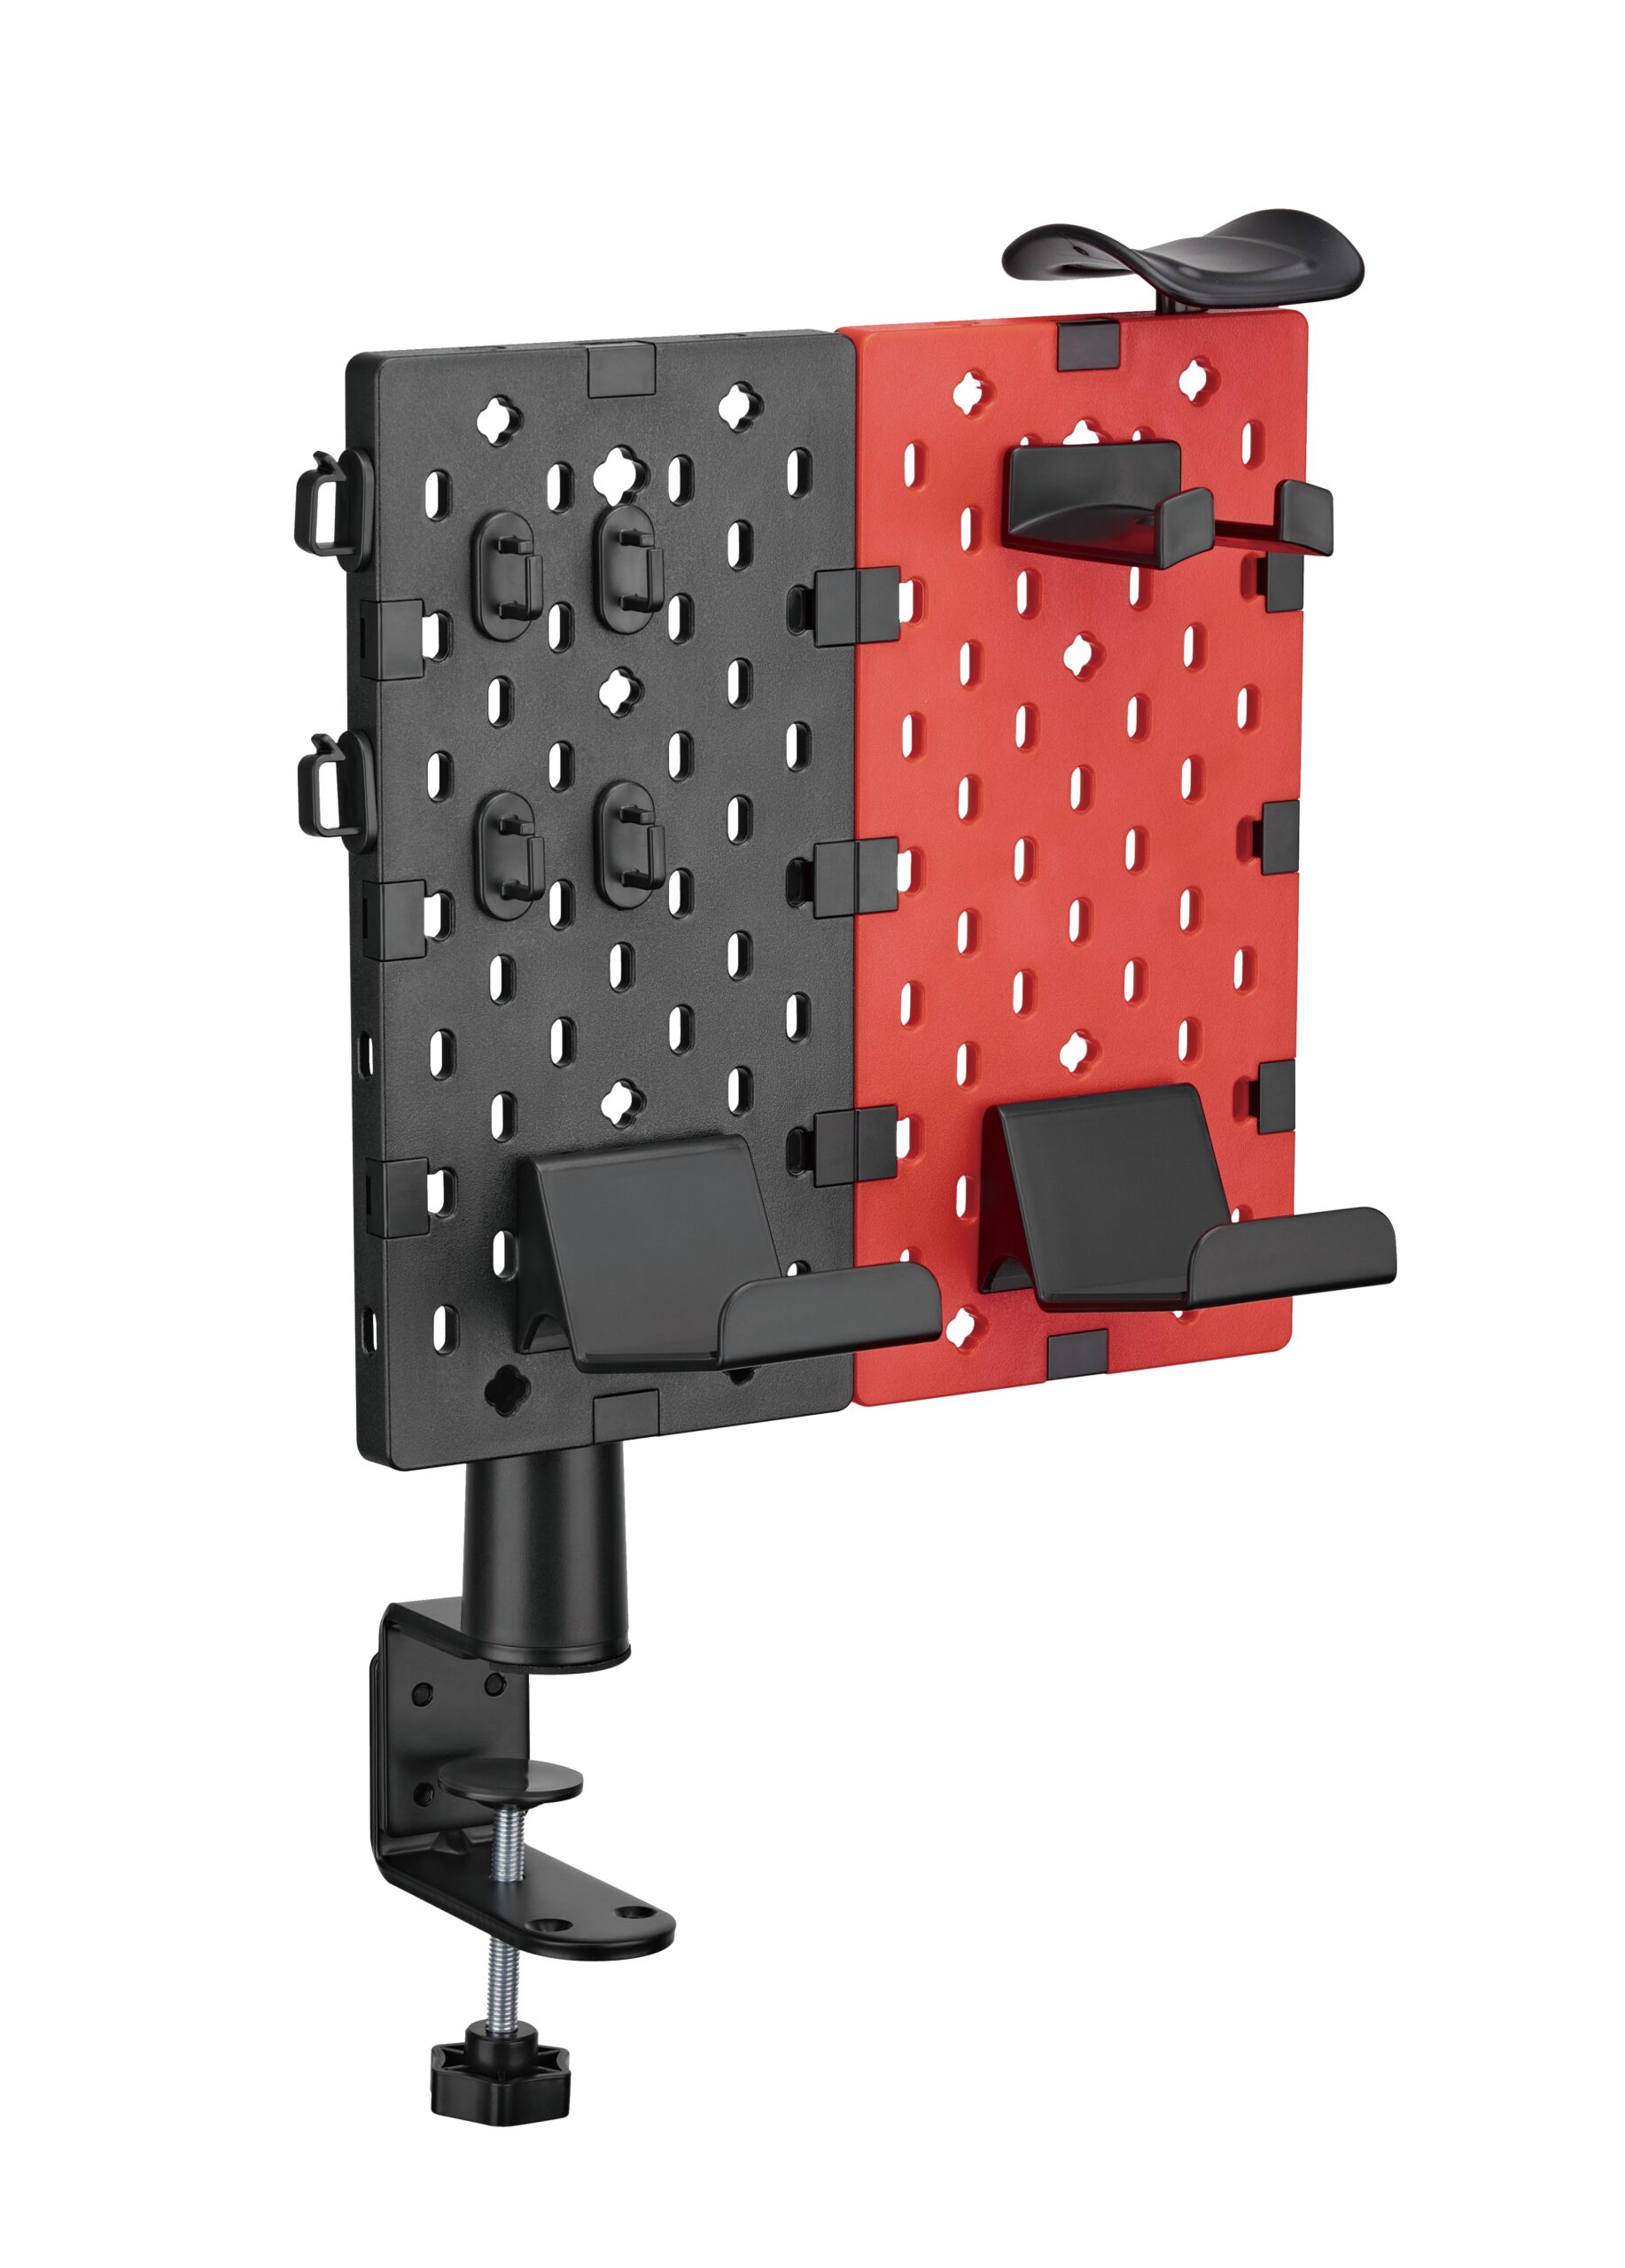 Supporto rosso nero da tavolo con morsetto per appendere dispositivi e accessori